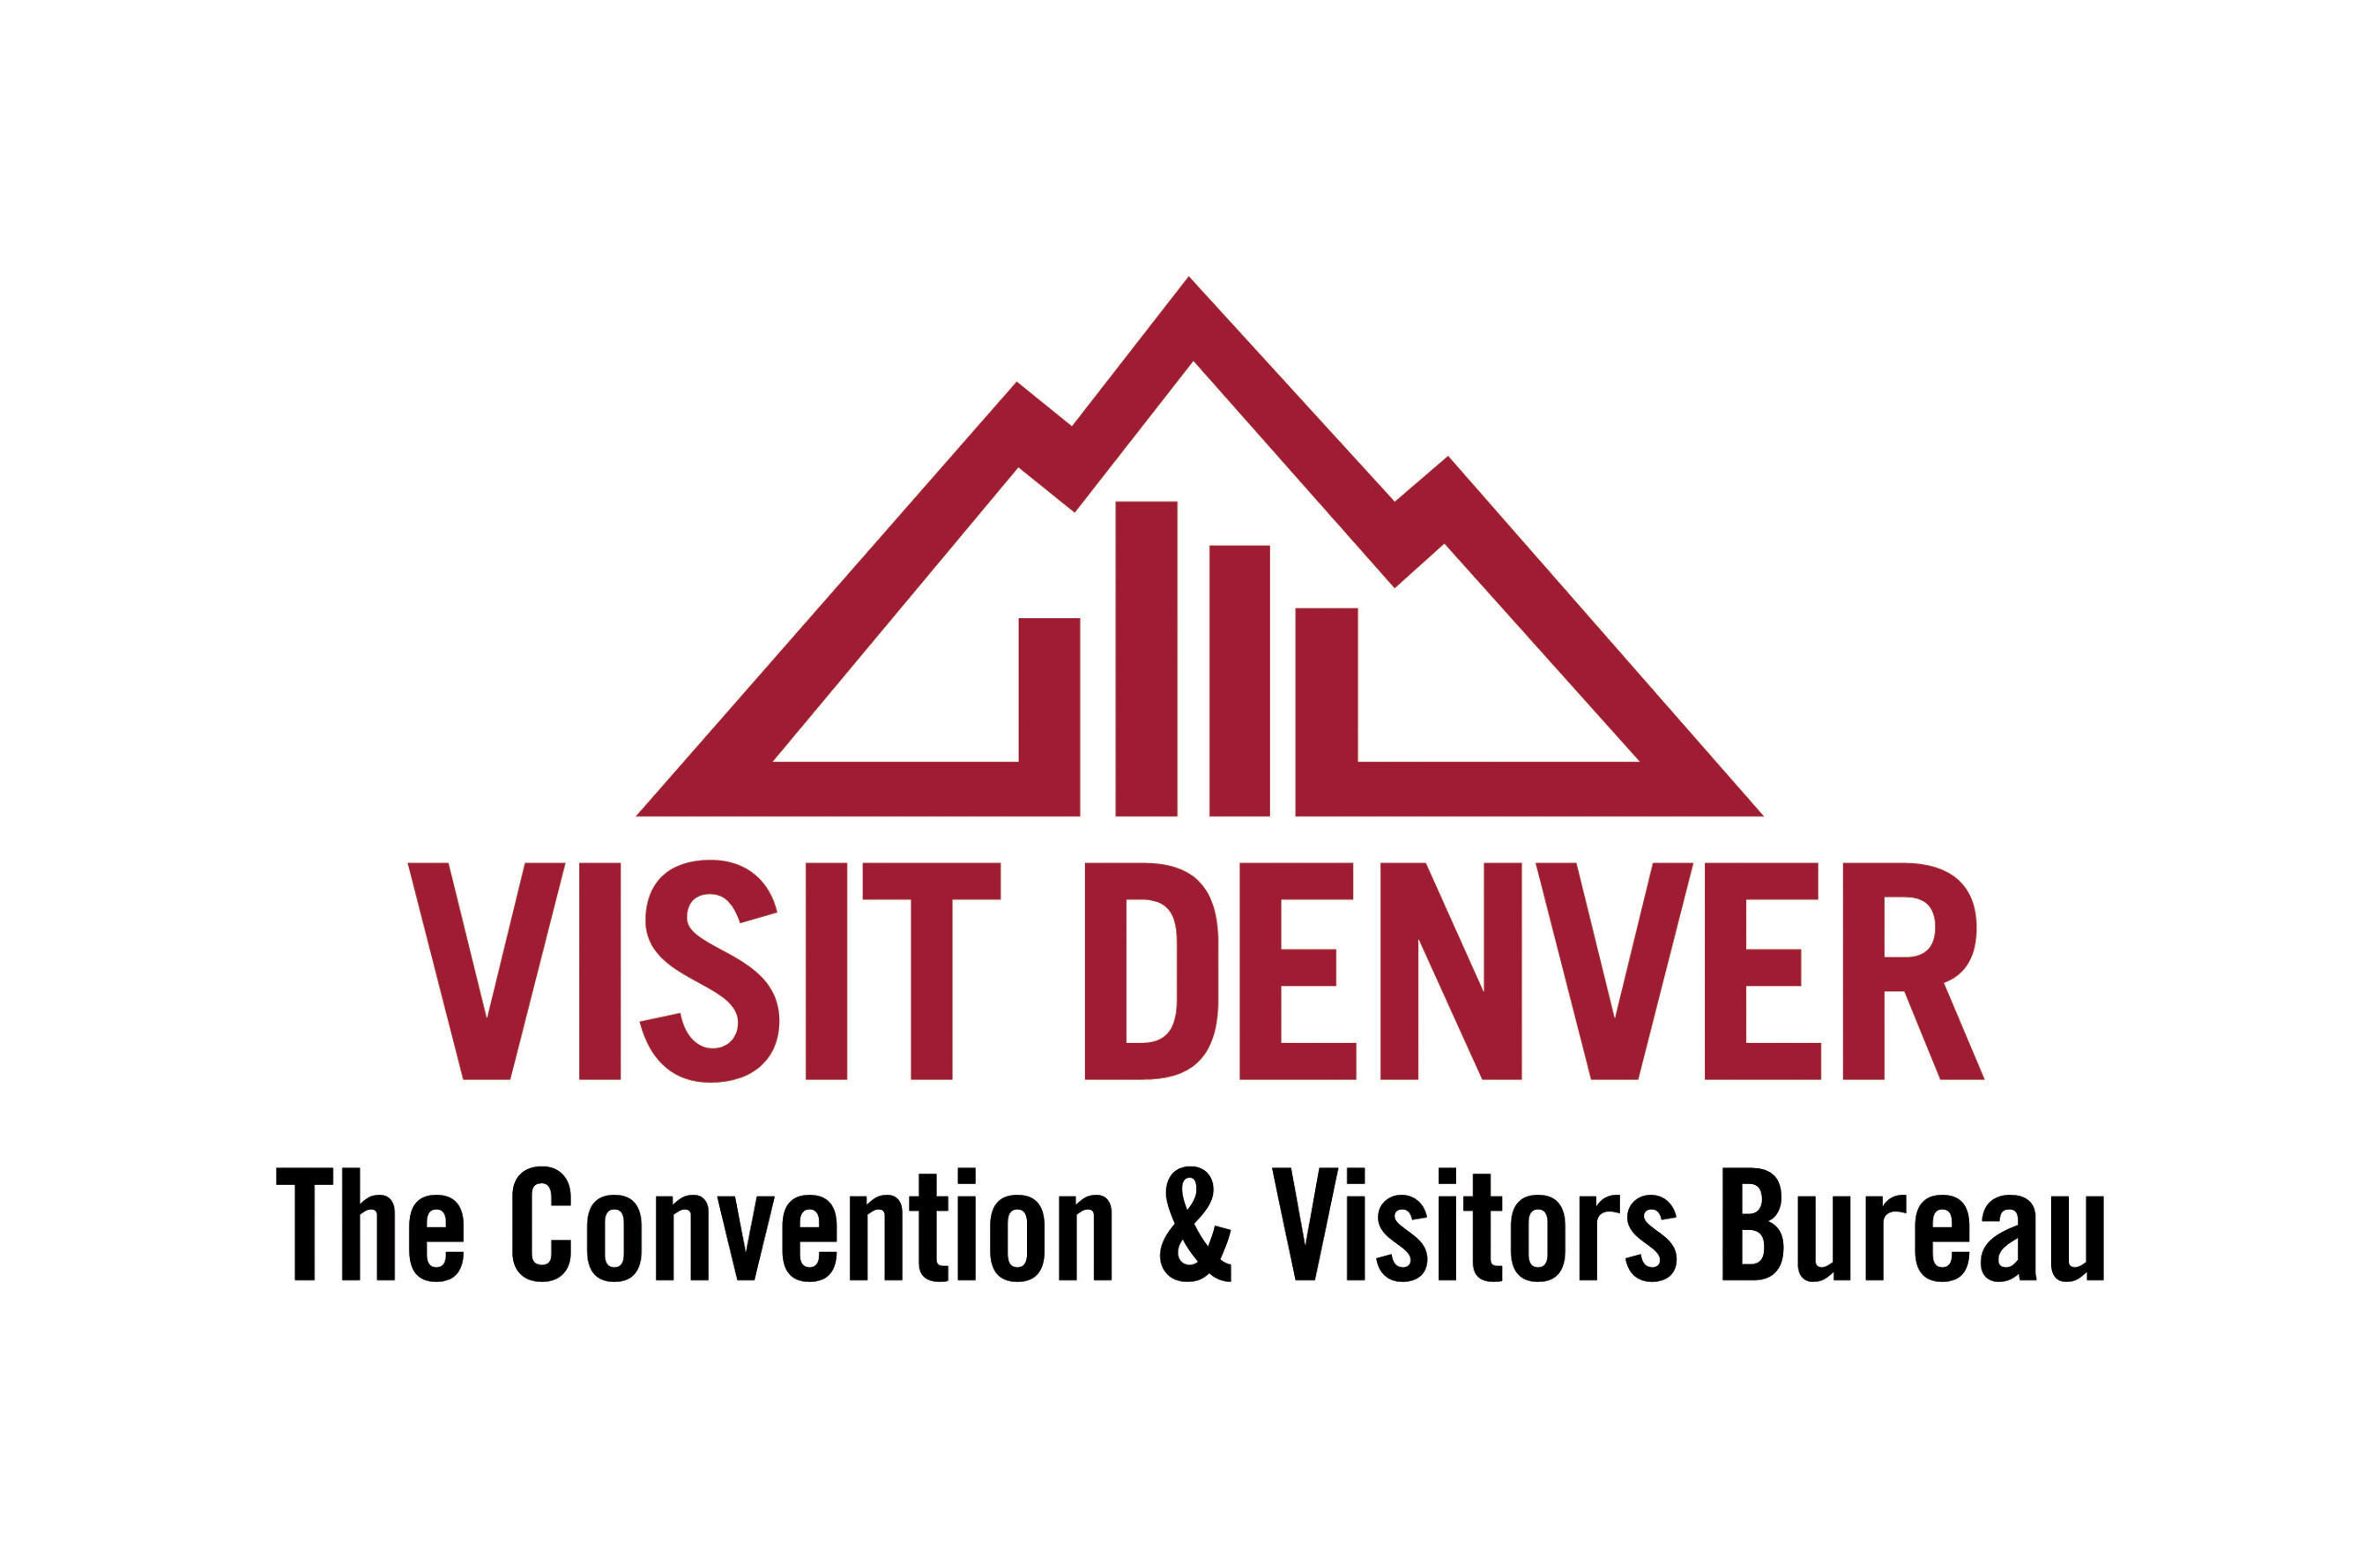 VISIT DENVER, The Convention & Visitors Bureau logo.